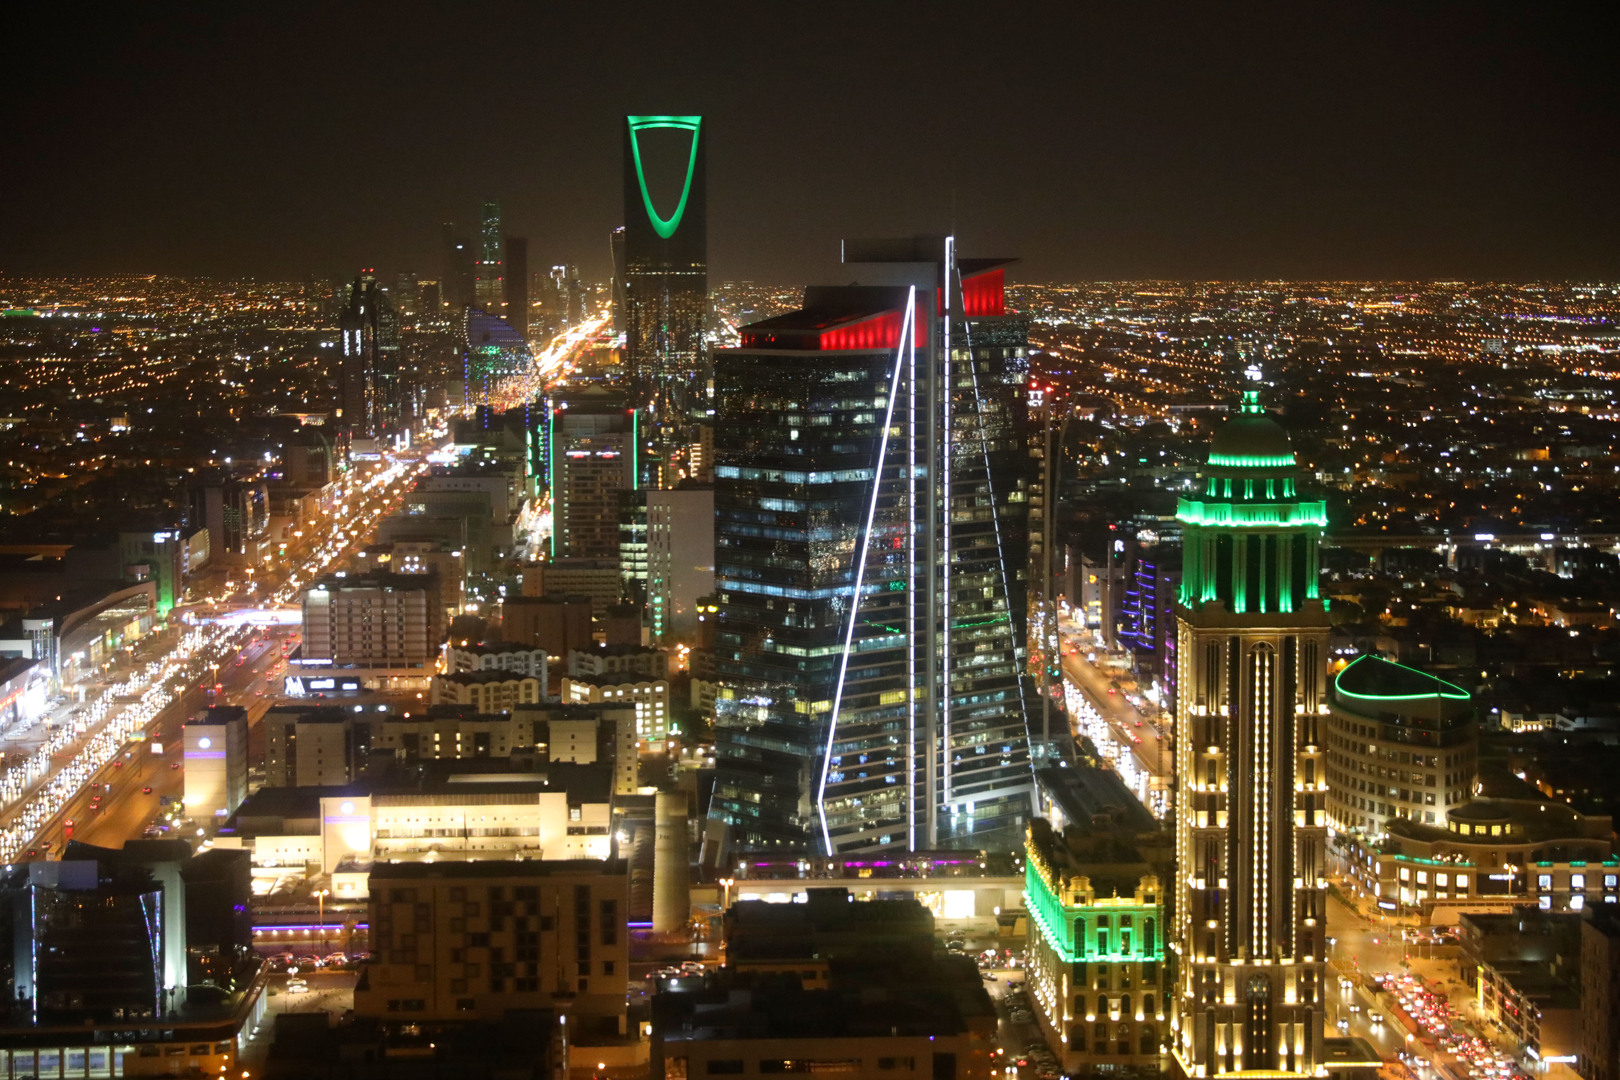 شركة عالمية تستثمر قرابة 5.3 مليار دولار في السعودية